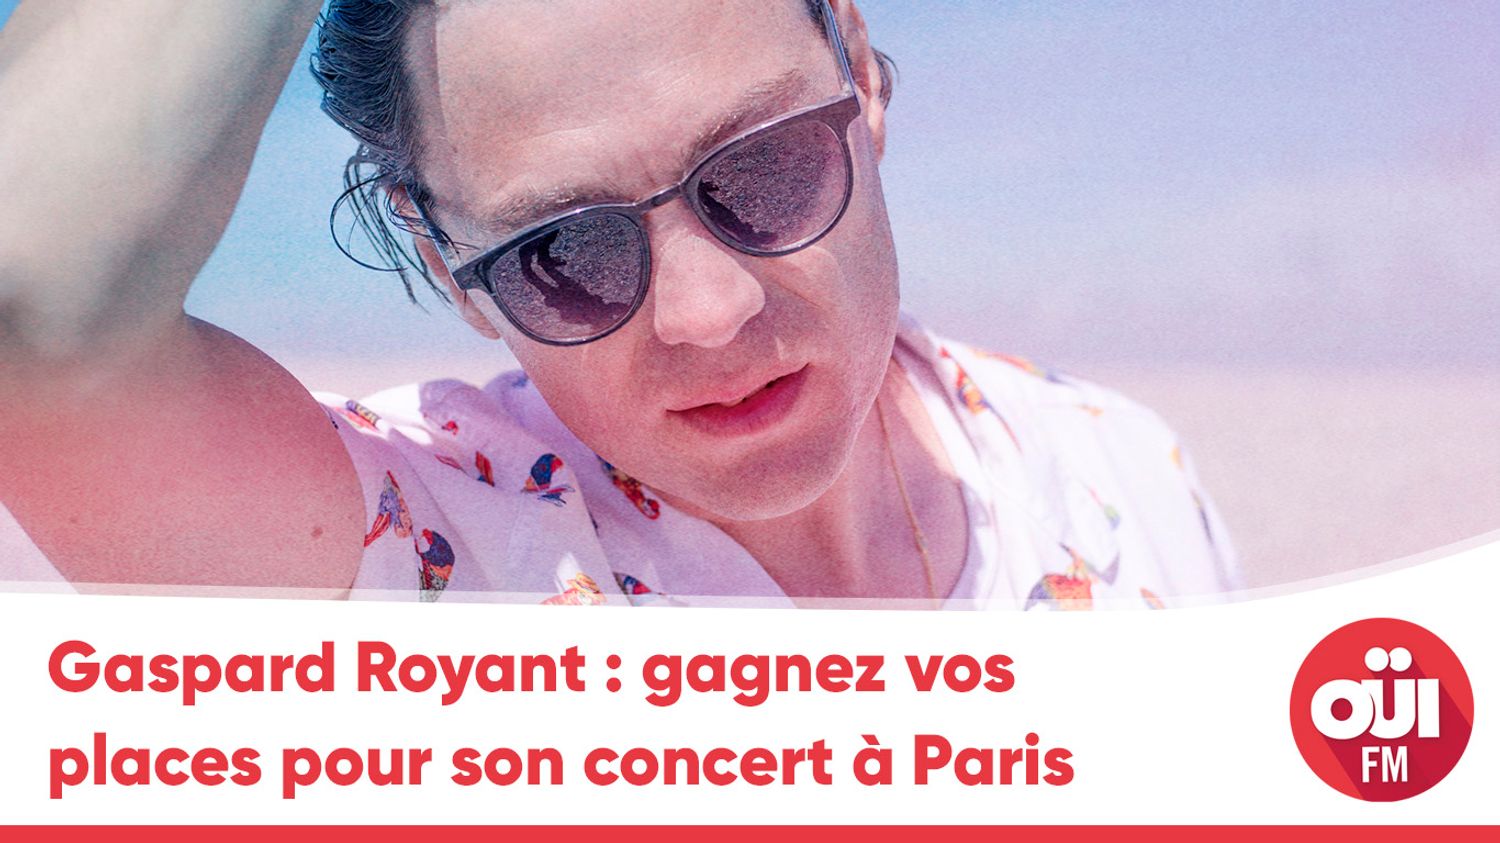 Oüi FM - Gaspard Royant